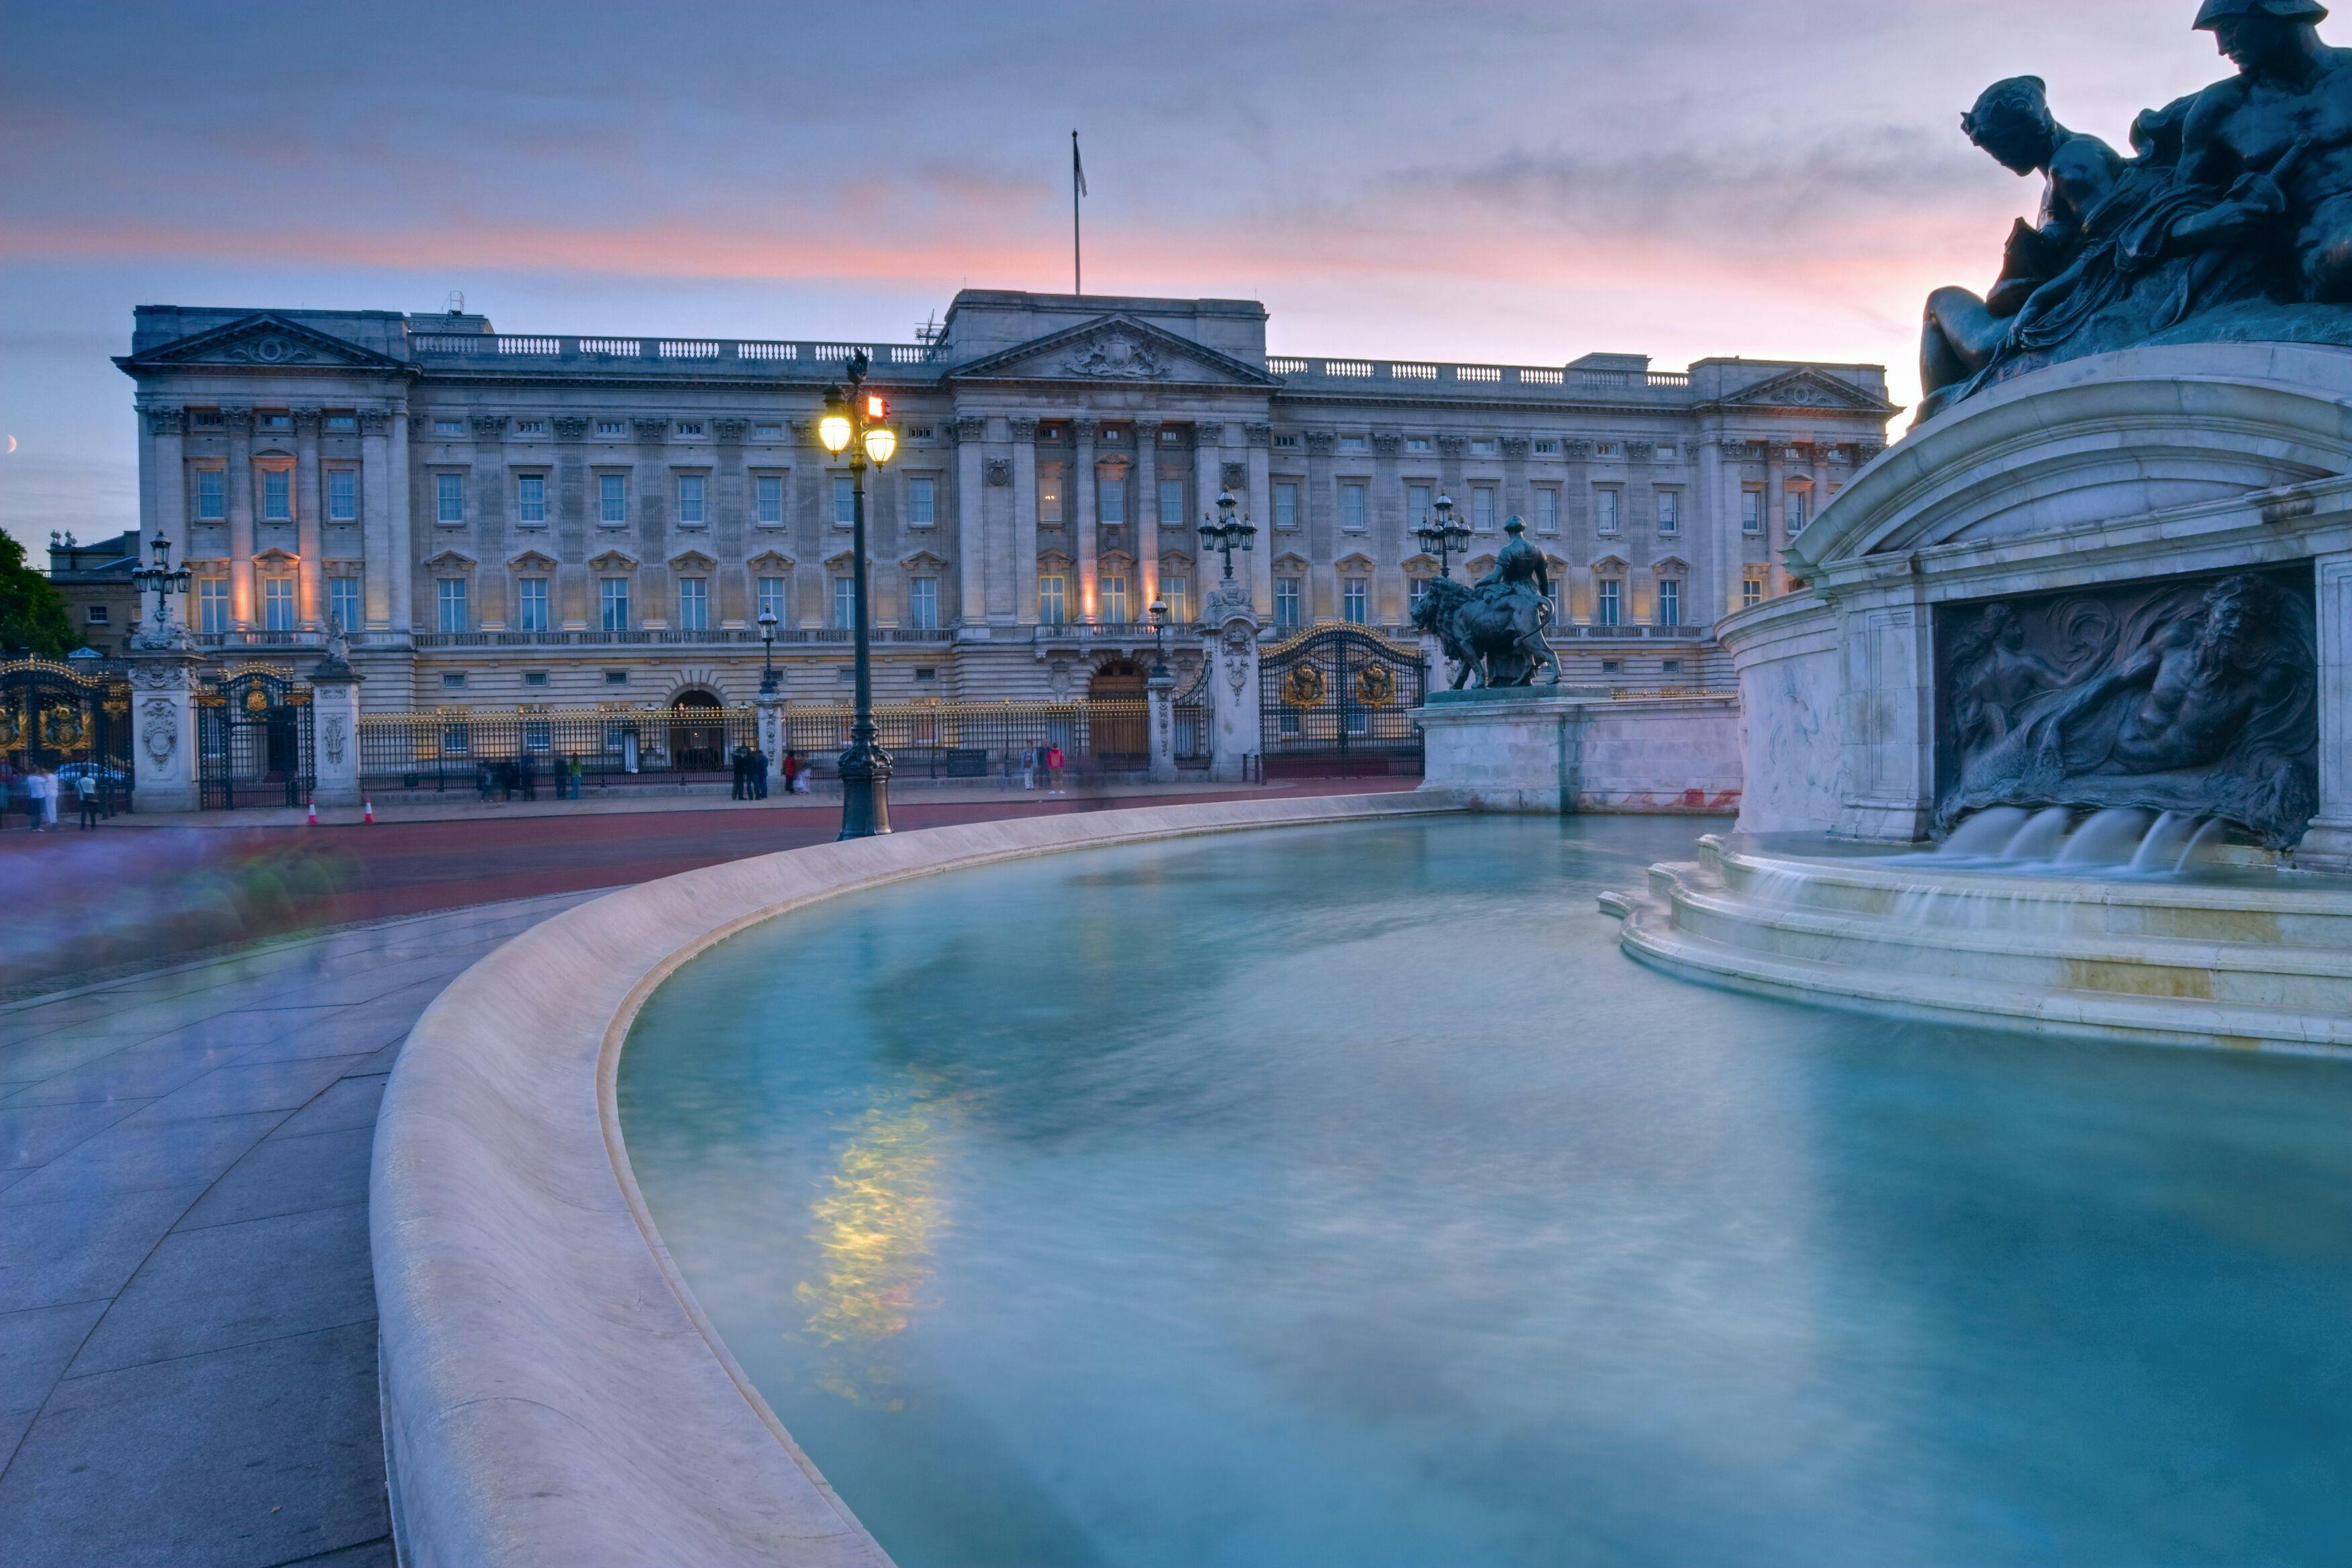 Tour multimídia pelas salões de aparato e pelos estábulos reais do Palácio de Buckingham